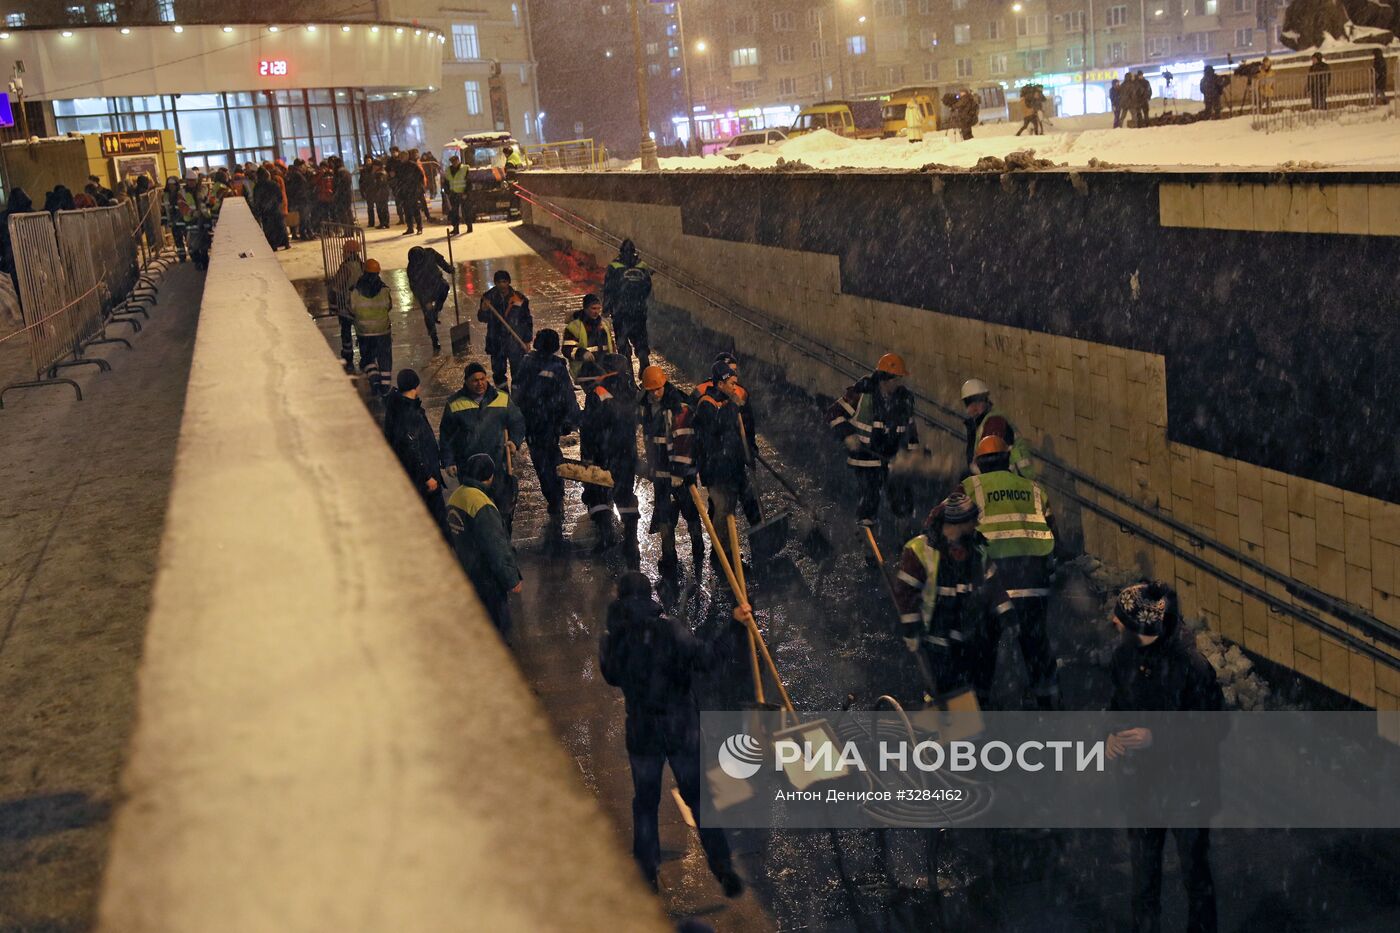 Строительные леса обрушились в переходе у метро "Улица 1905 года" в Москве